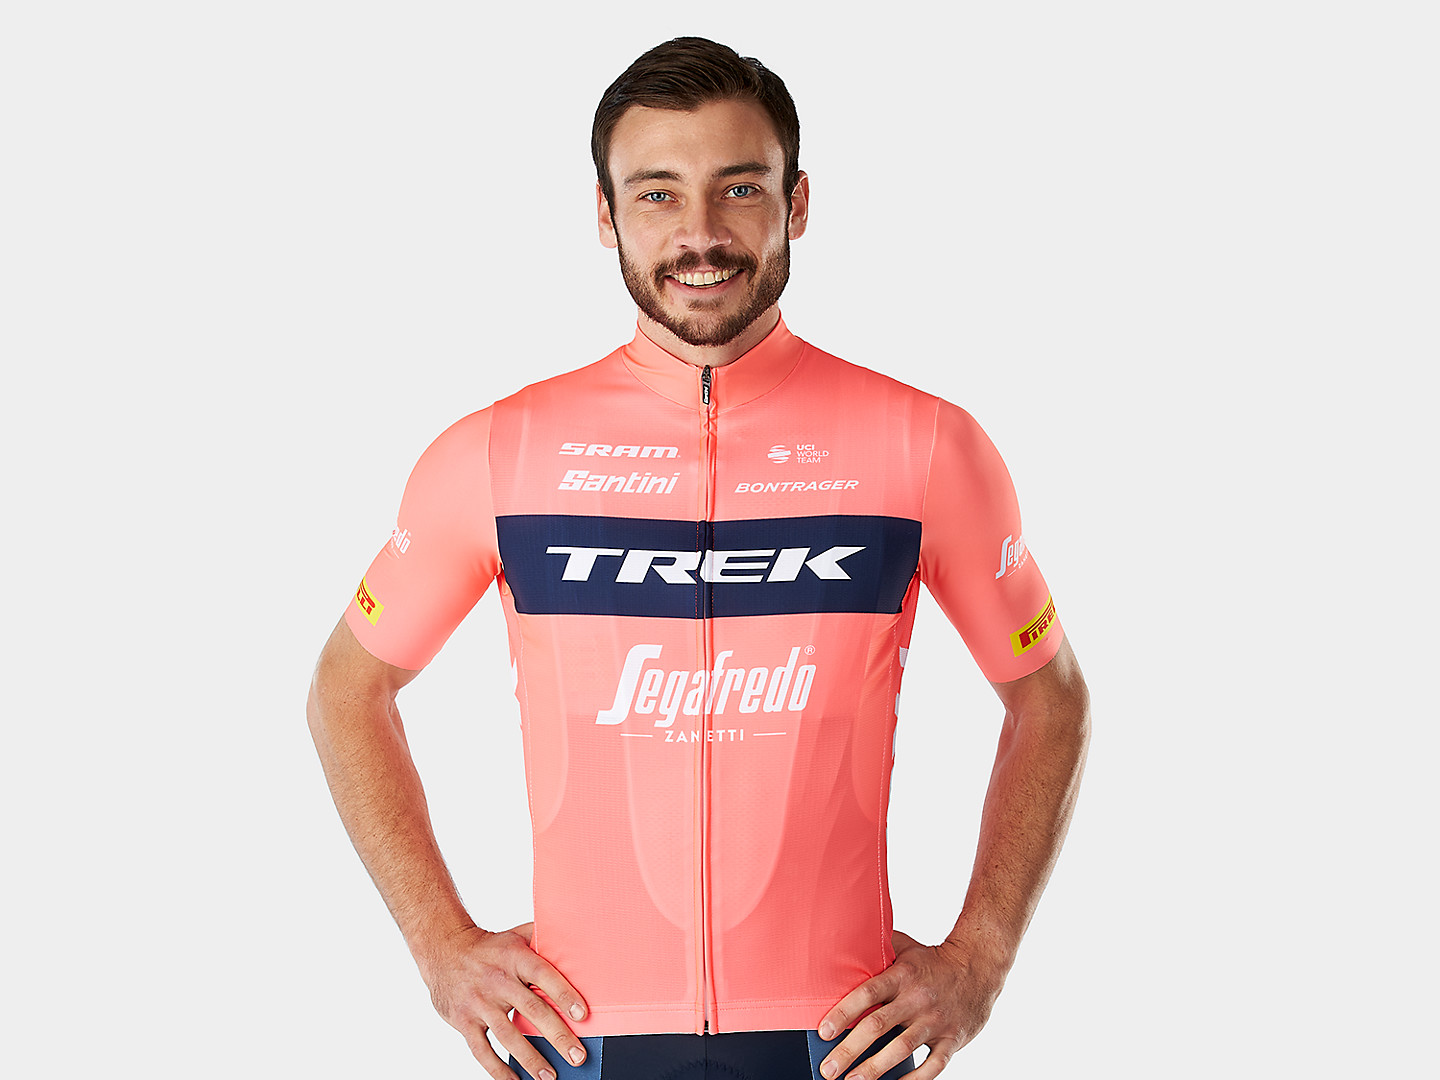 Camiseta de ciclismo feminina, réplica da versão de treino da Equipe Trek-Segafredo fabricada pela Santini